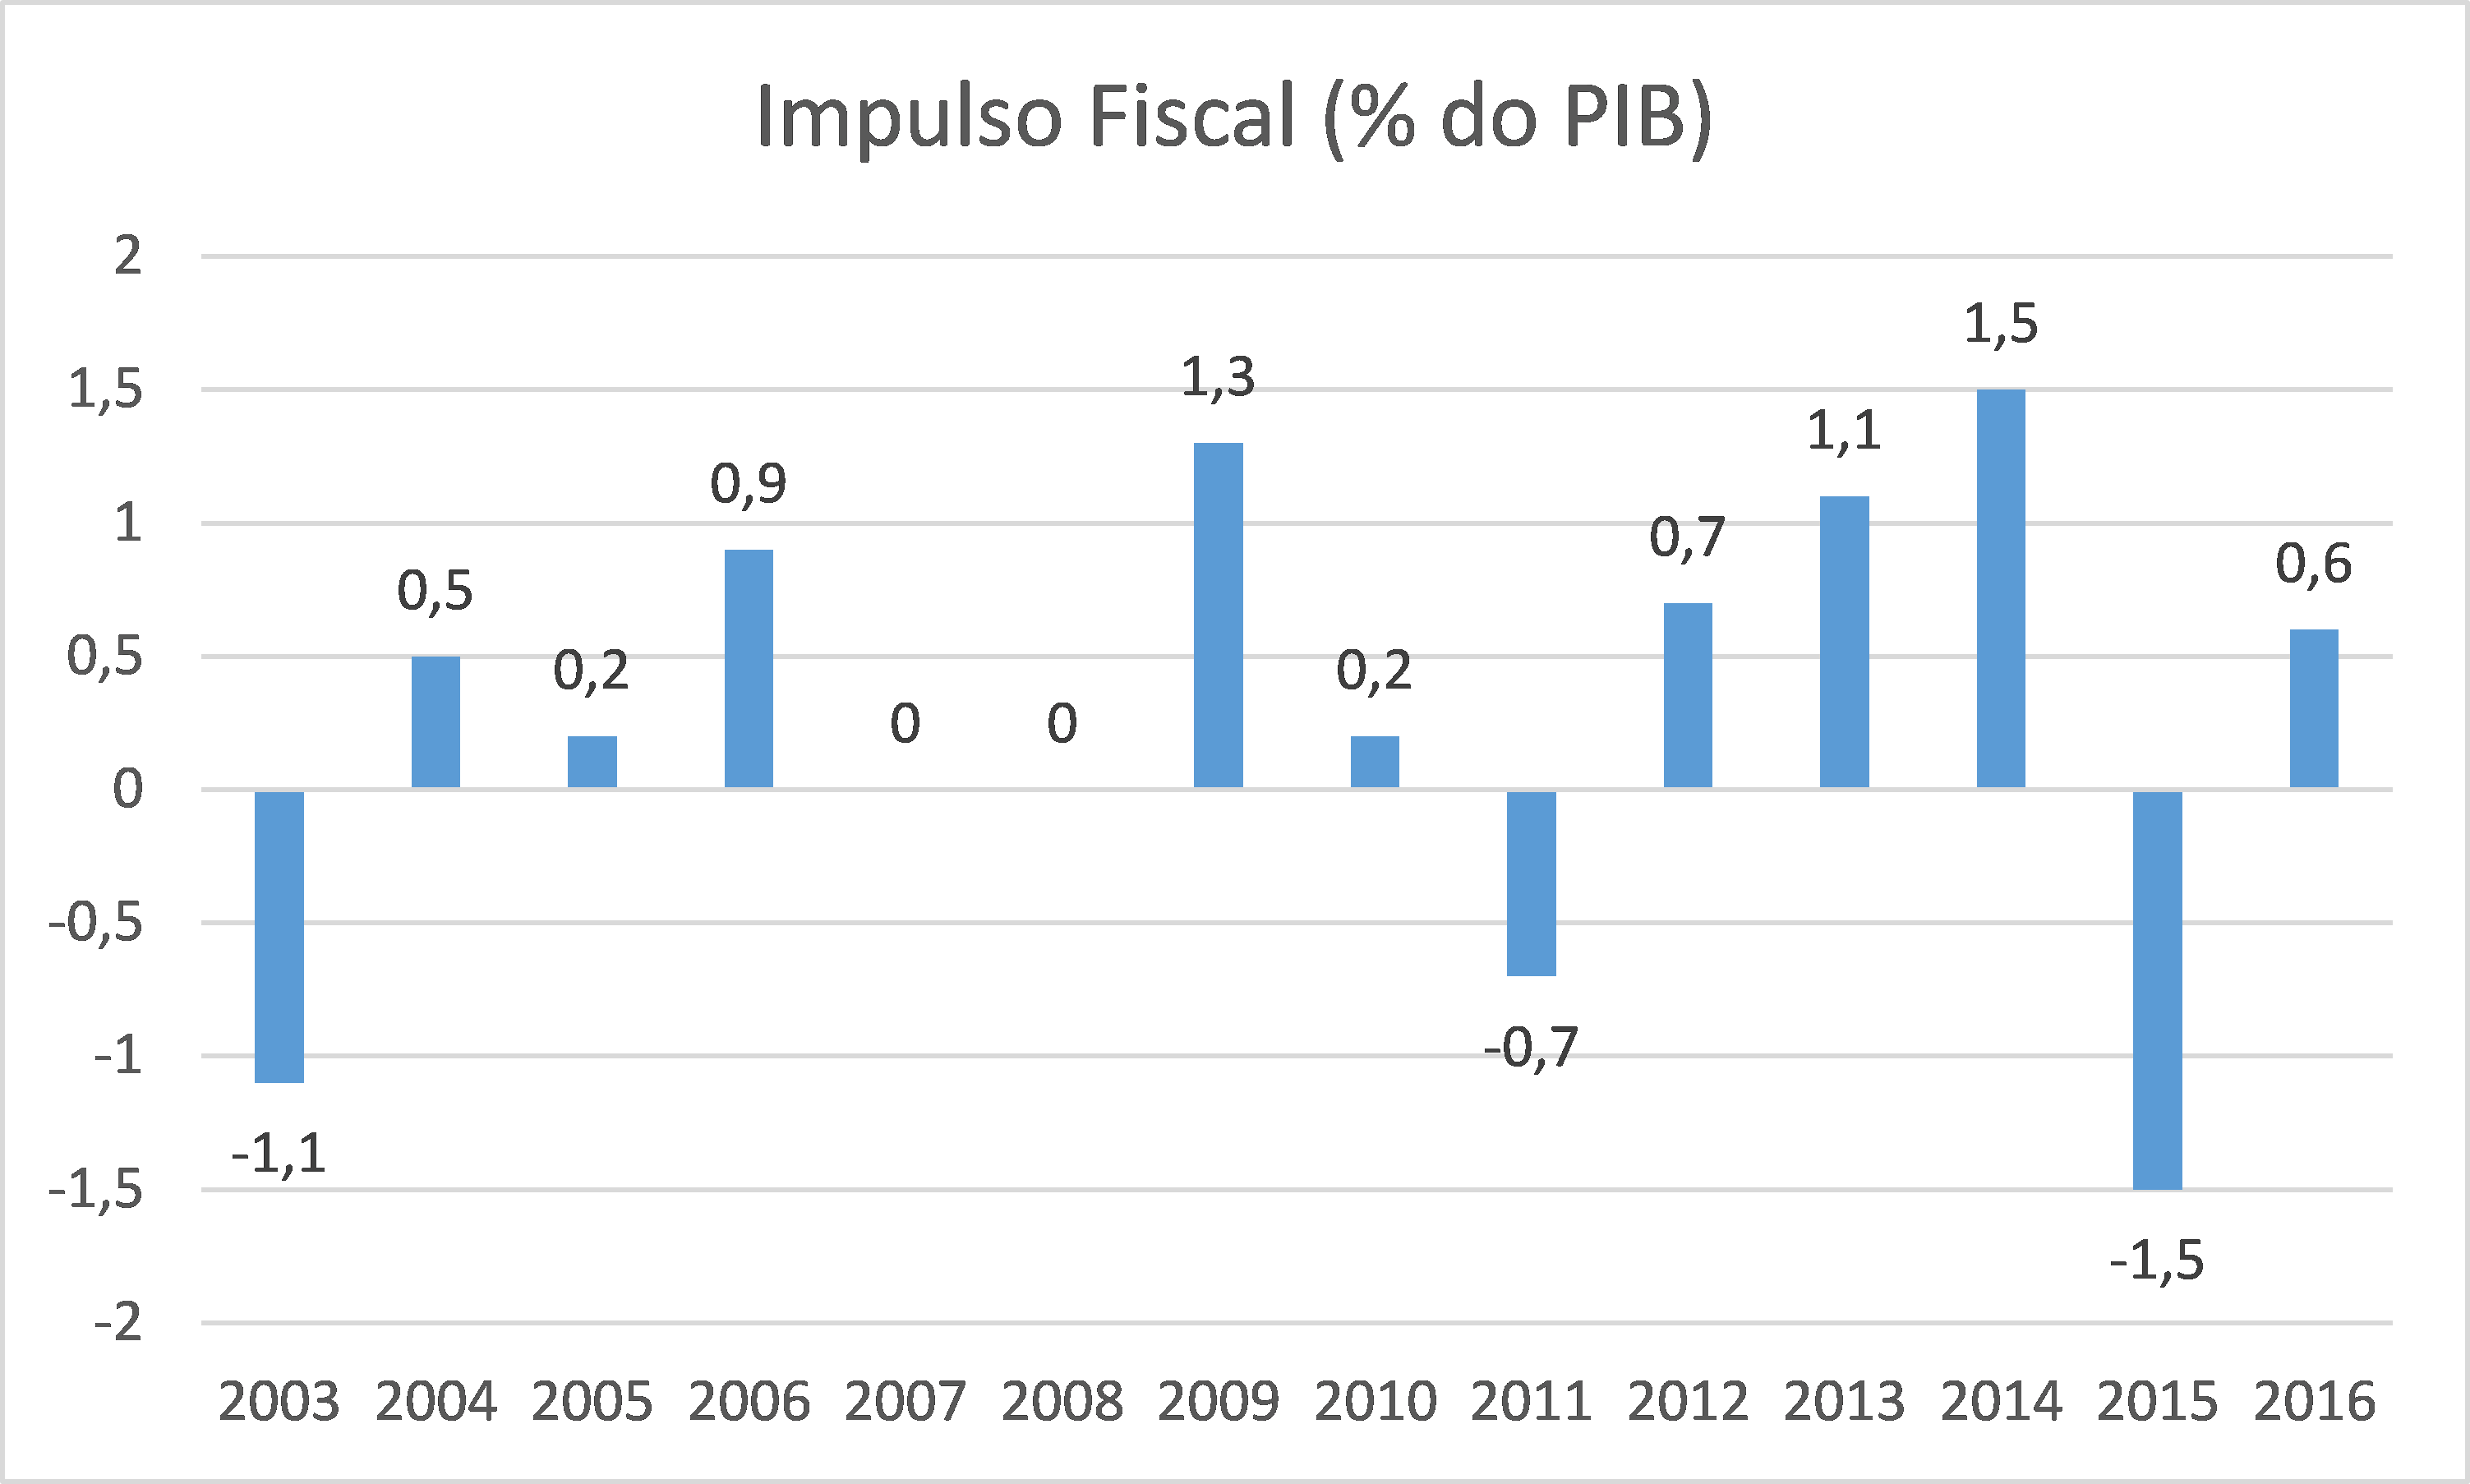 A China destruiu o Brasil? - Paulo Gala / Economia & Finanças